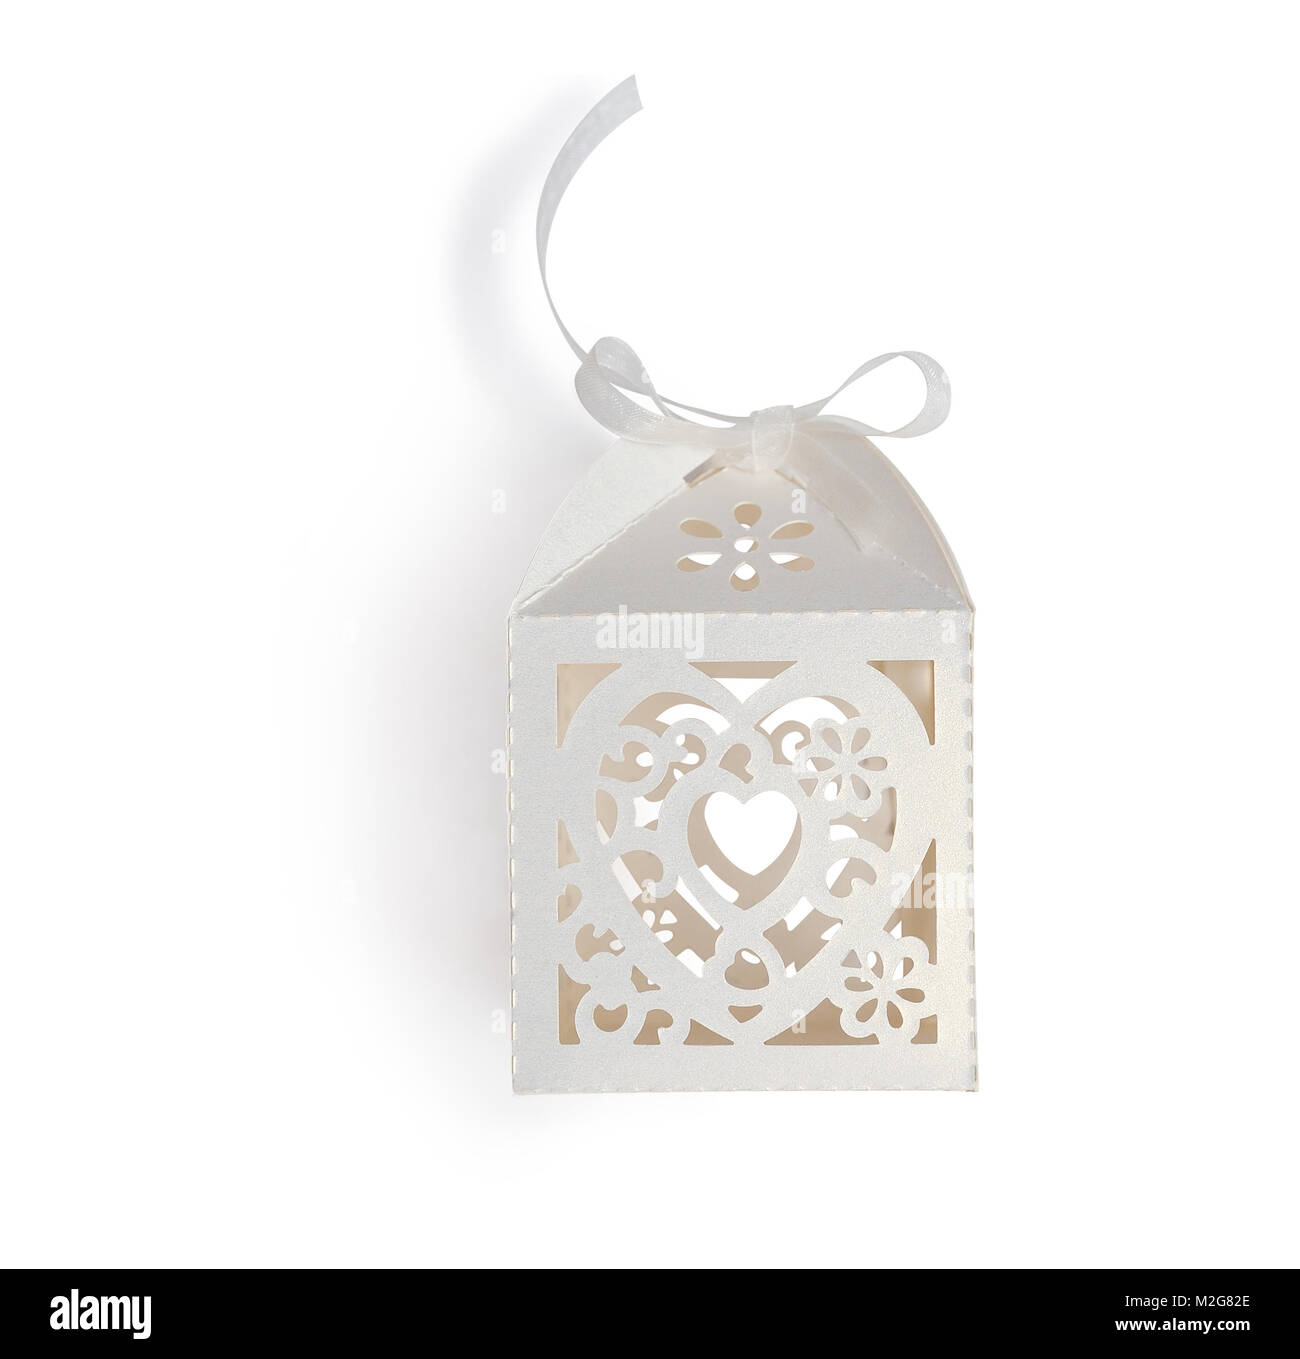 Vintage boîte-cadeau avec ruban blanc bow, masque de découpe isolé sur fond blanc, vue du dessus l'illustration pour la Saint-Valentin ou mariage Banque D'Images